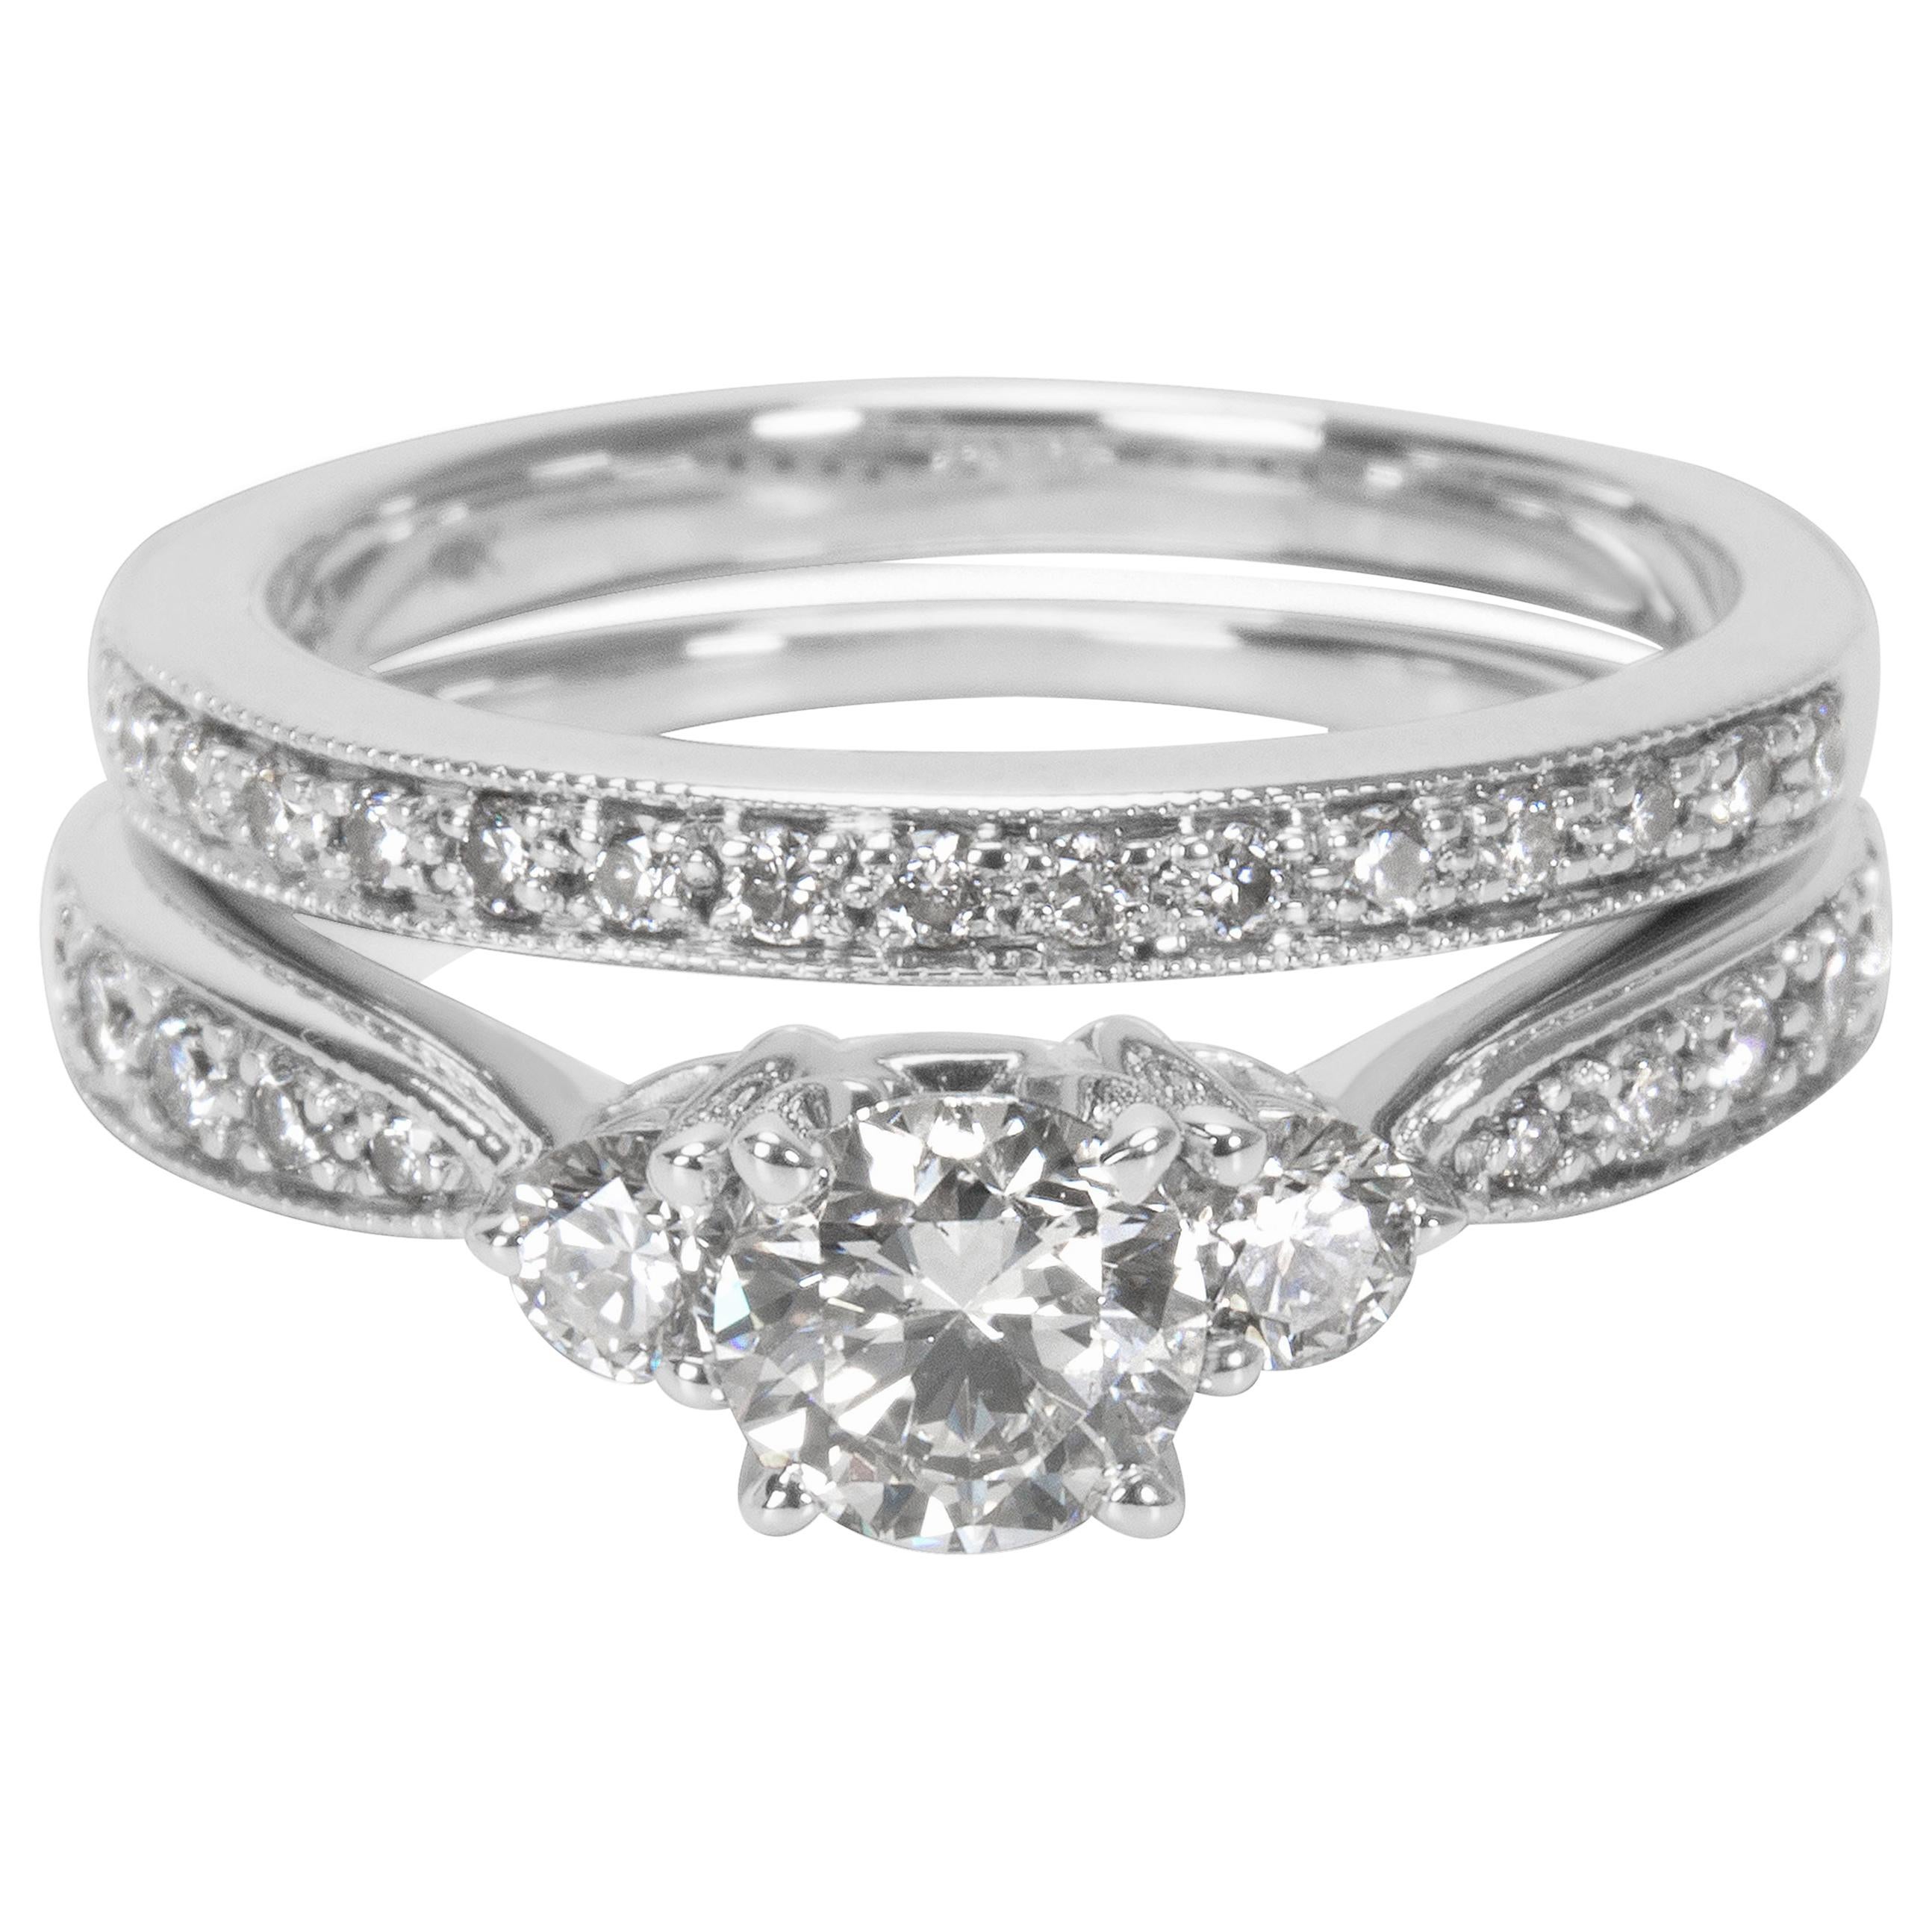 Diamond Engagement Ring Wedding Set in 14 Karat White Gold '1.35 Carat'